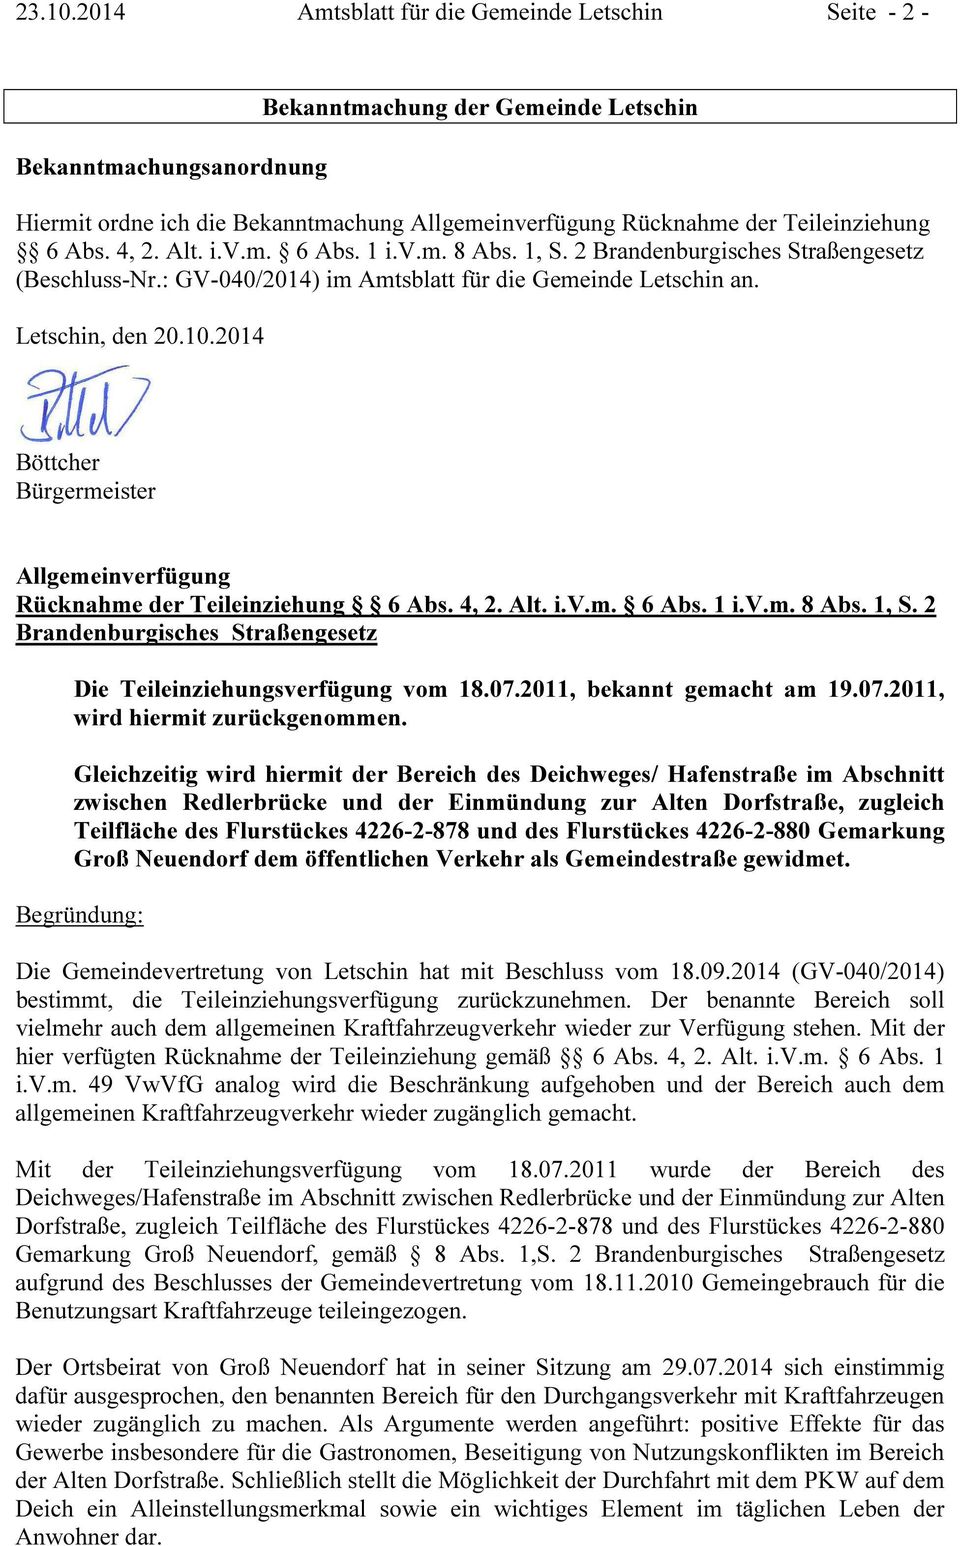 6 Abs. 4, 2. Alt. i.v.m. 6 Abs. 1 i.v.m. 8 Abs. 1, S. 2 Brandenburgisches Straßengesetz (Beschluss-Nr.: GV-040/2014) im Amtsblatt für die Gemeinde Letschin an. Letschin, den 20.10.